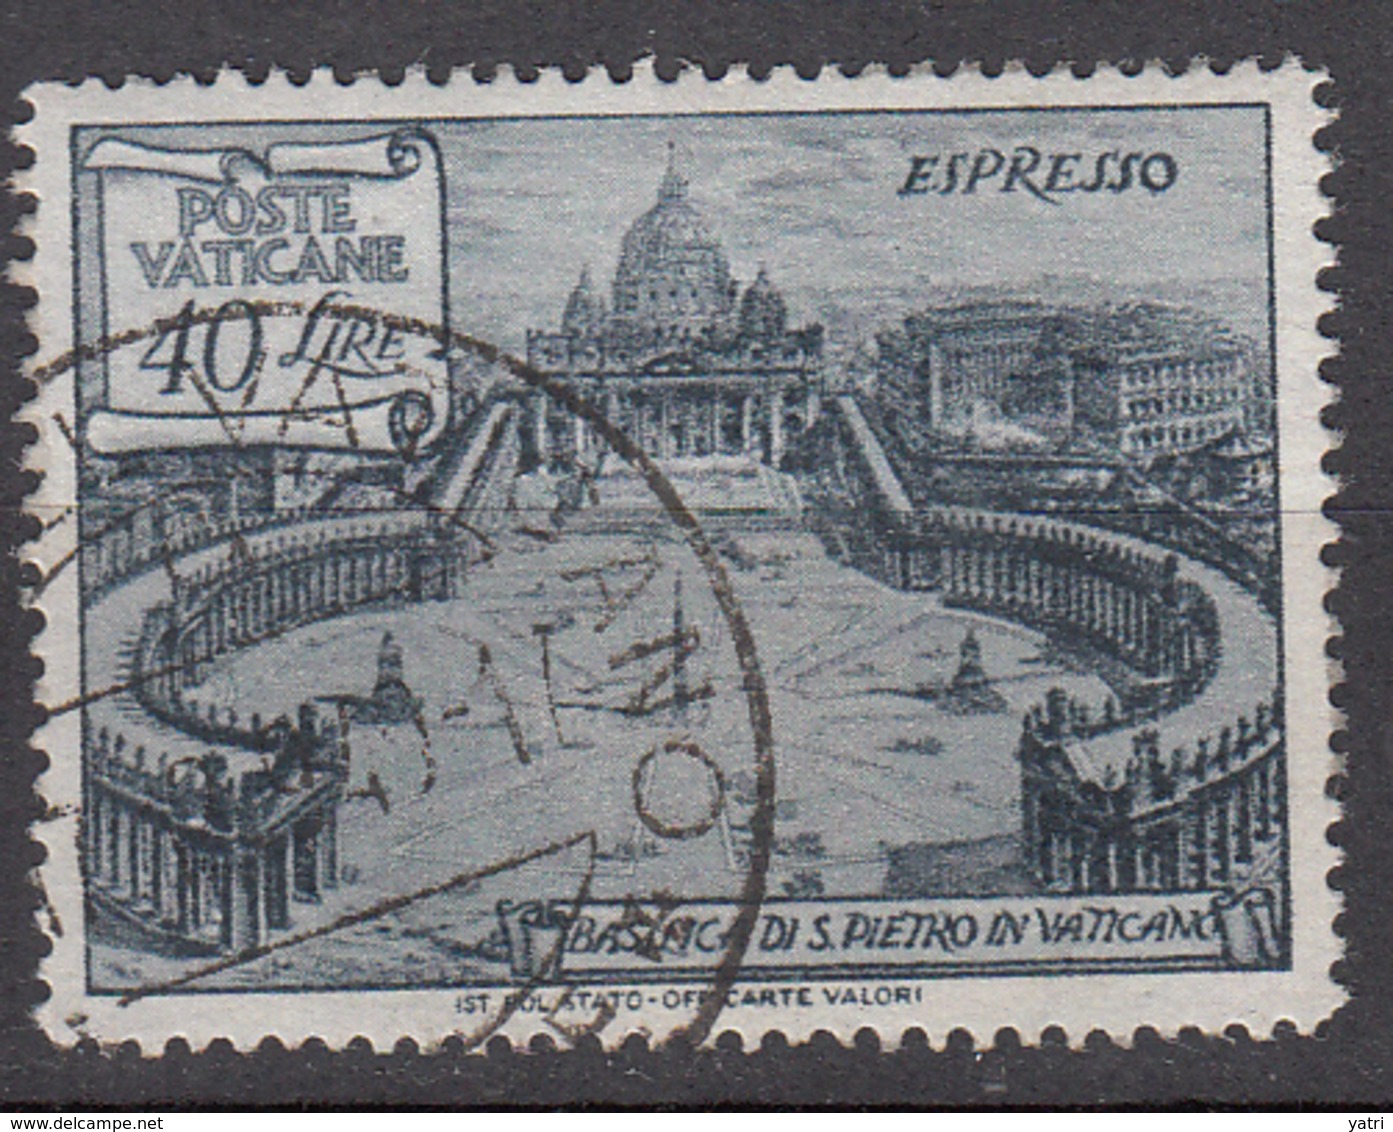 Vaticano - 1949 - Basiliche, Espresso 40 Lire - Urgente